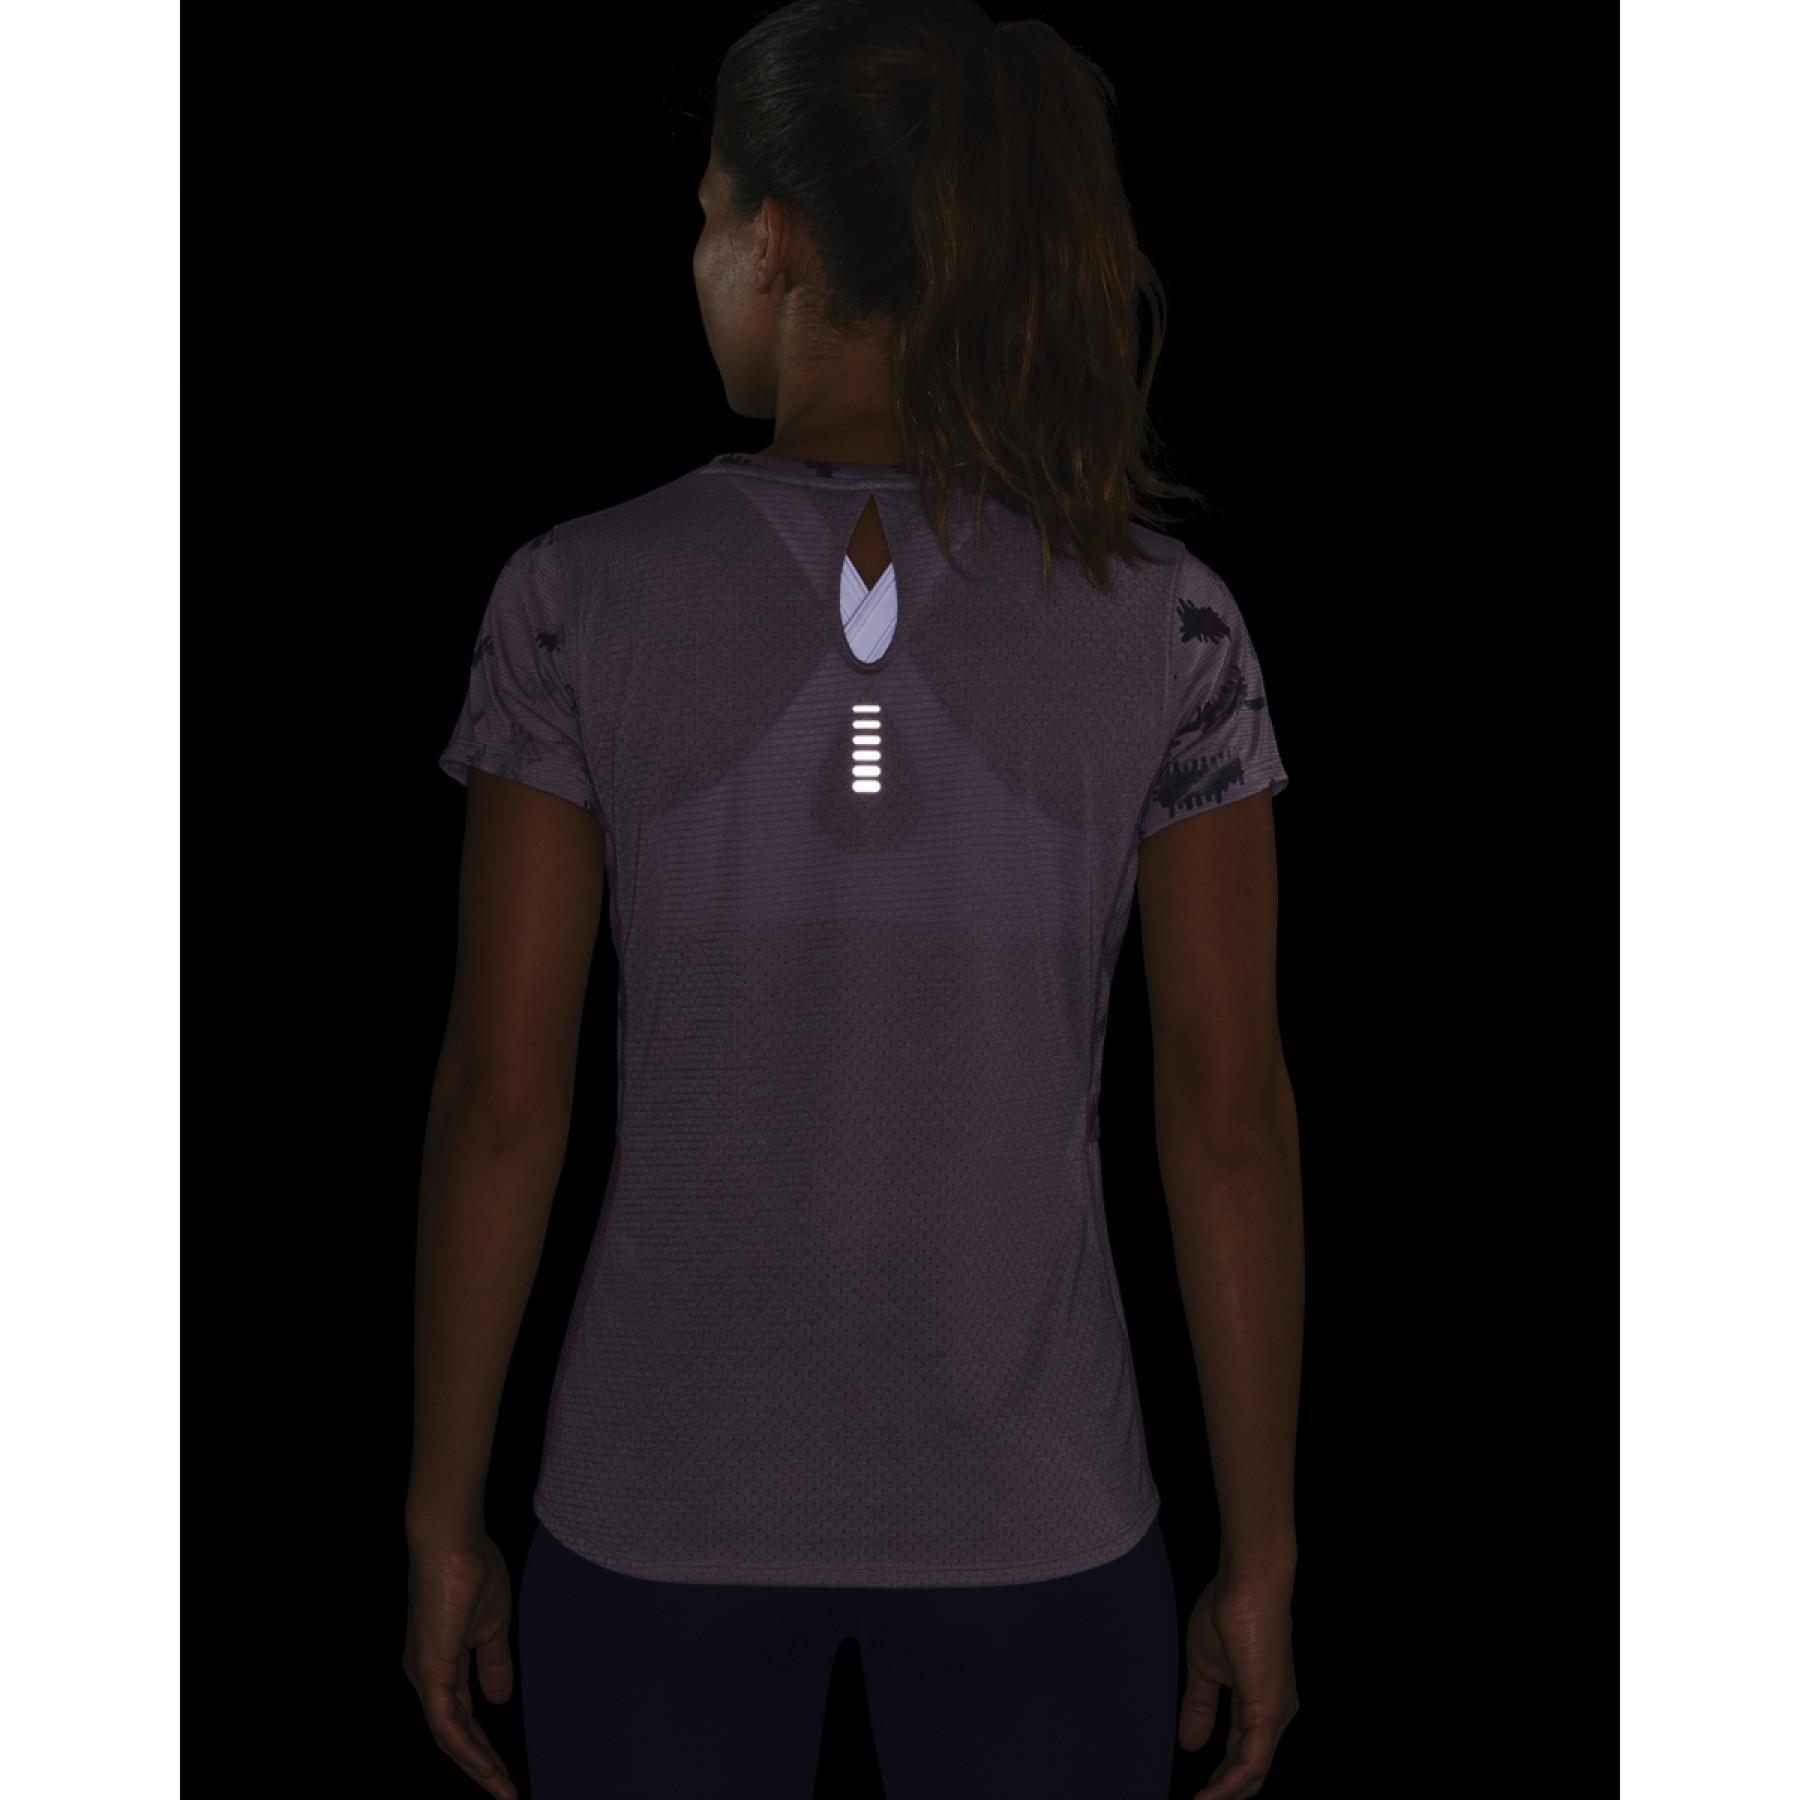 T-shirt femme Under Armour à manches courtes Streaker 2.0 Inverse